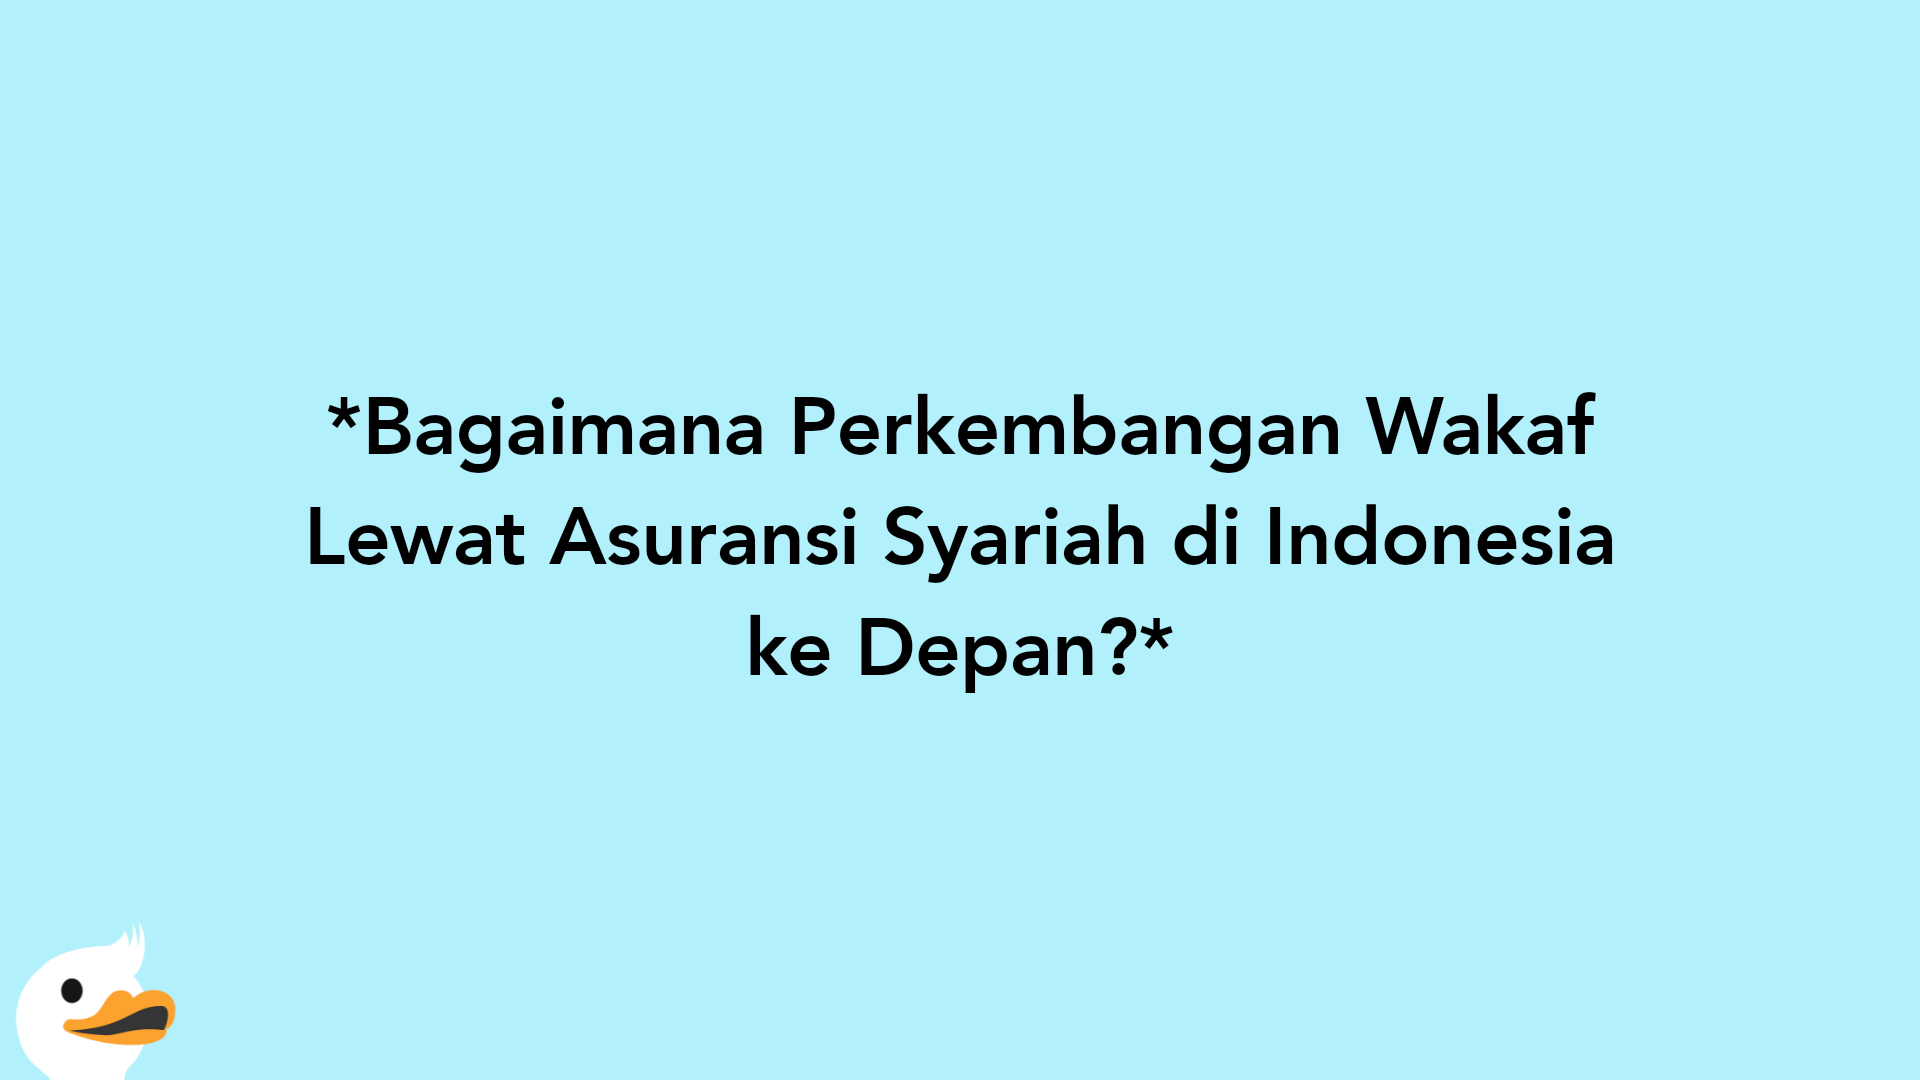 Bagaimana Perkembangan Wakaf Lewat Asuransi Syariah di Indonesia ke Depan?